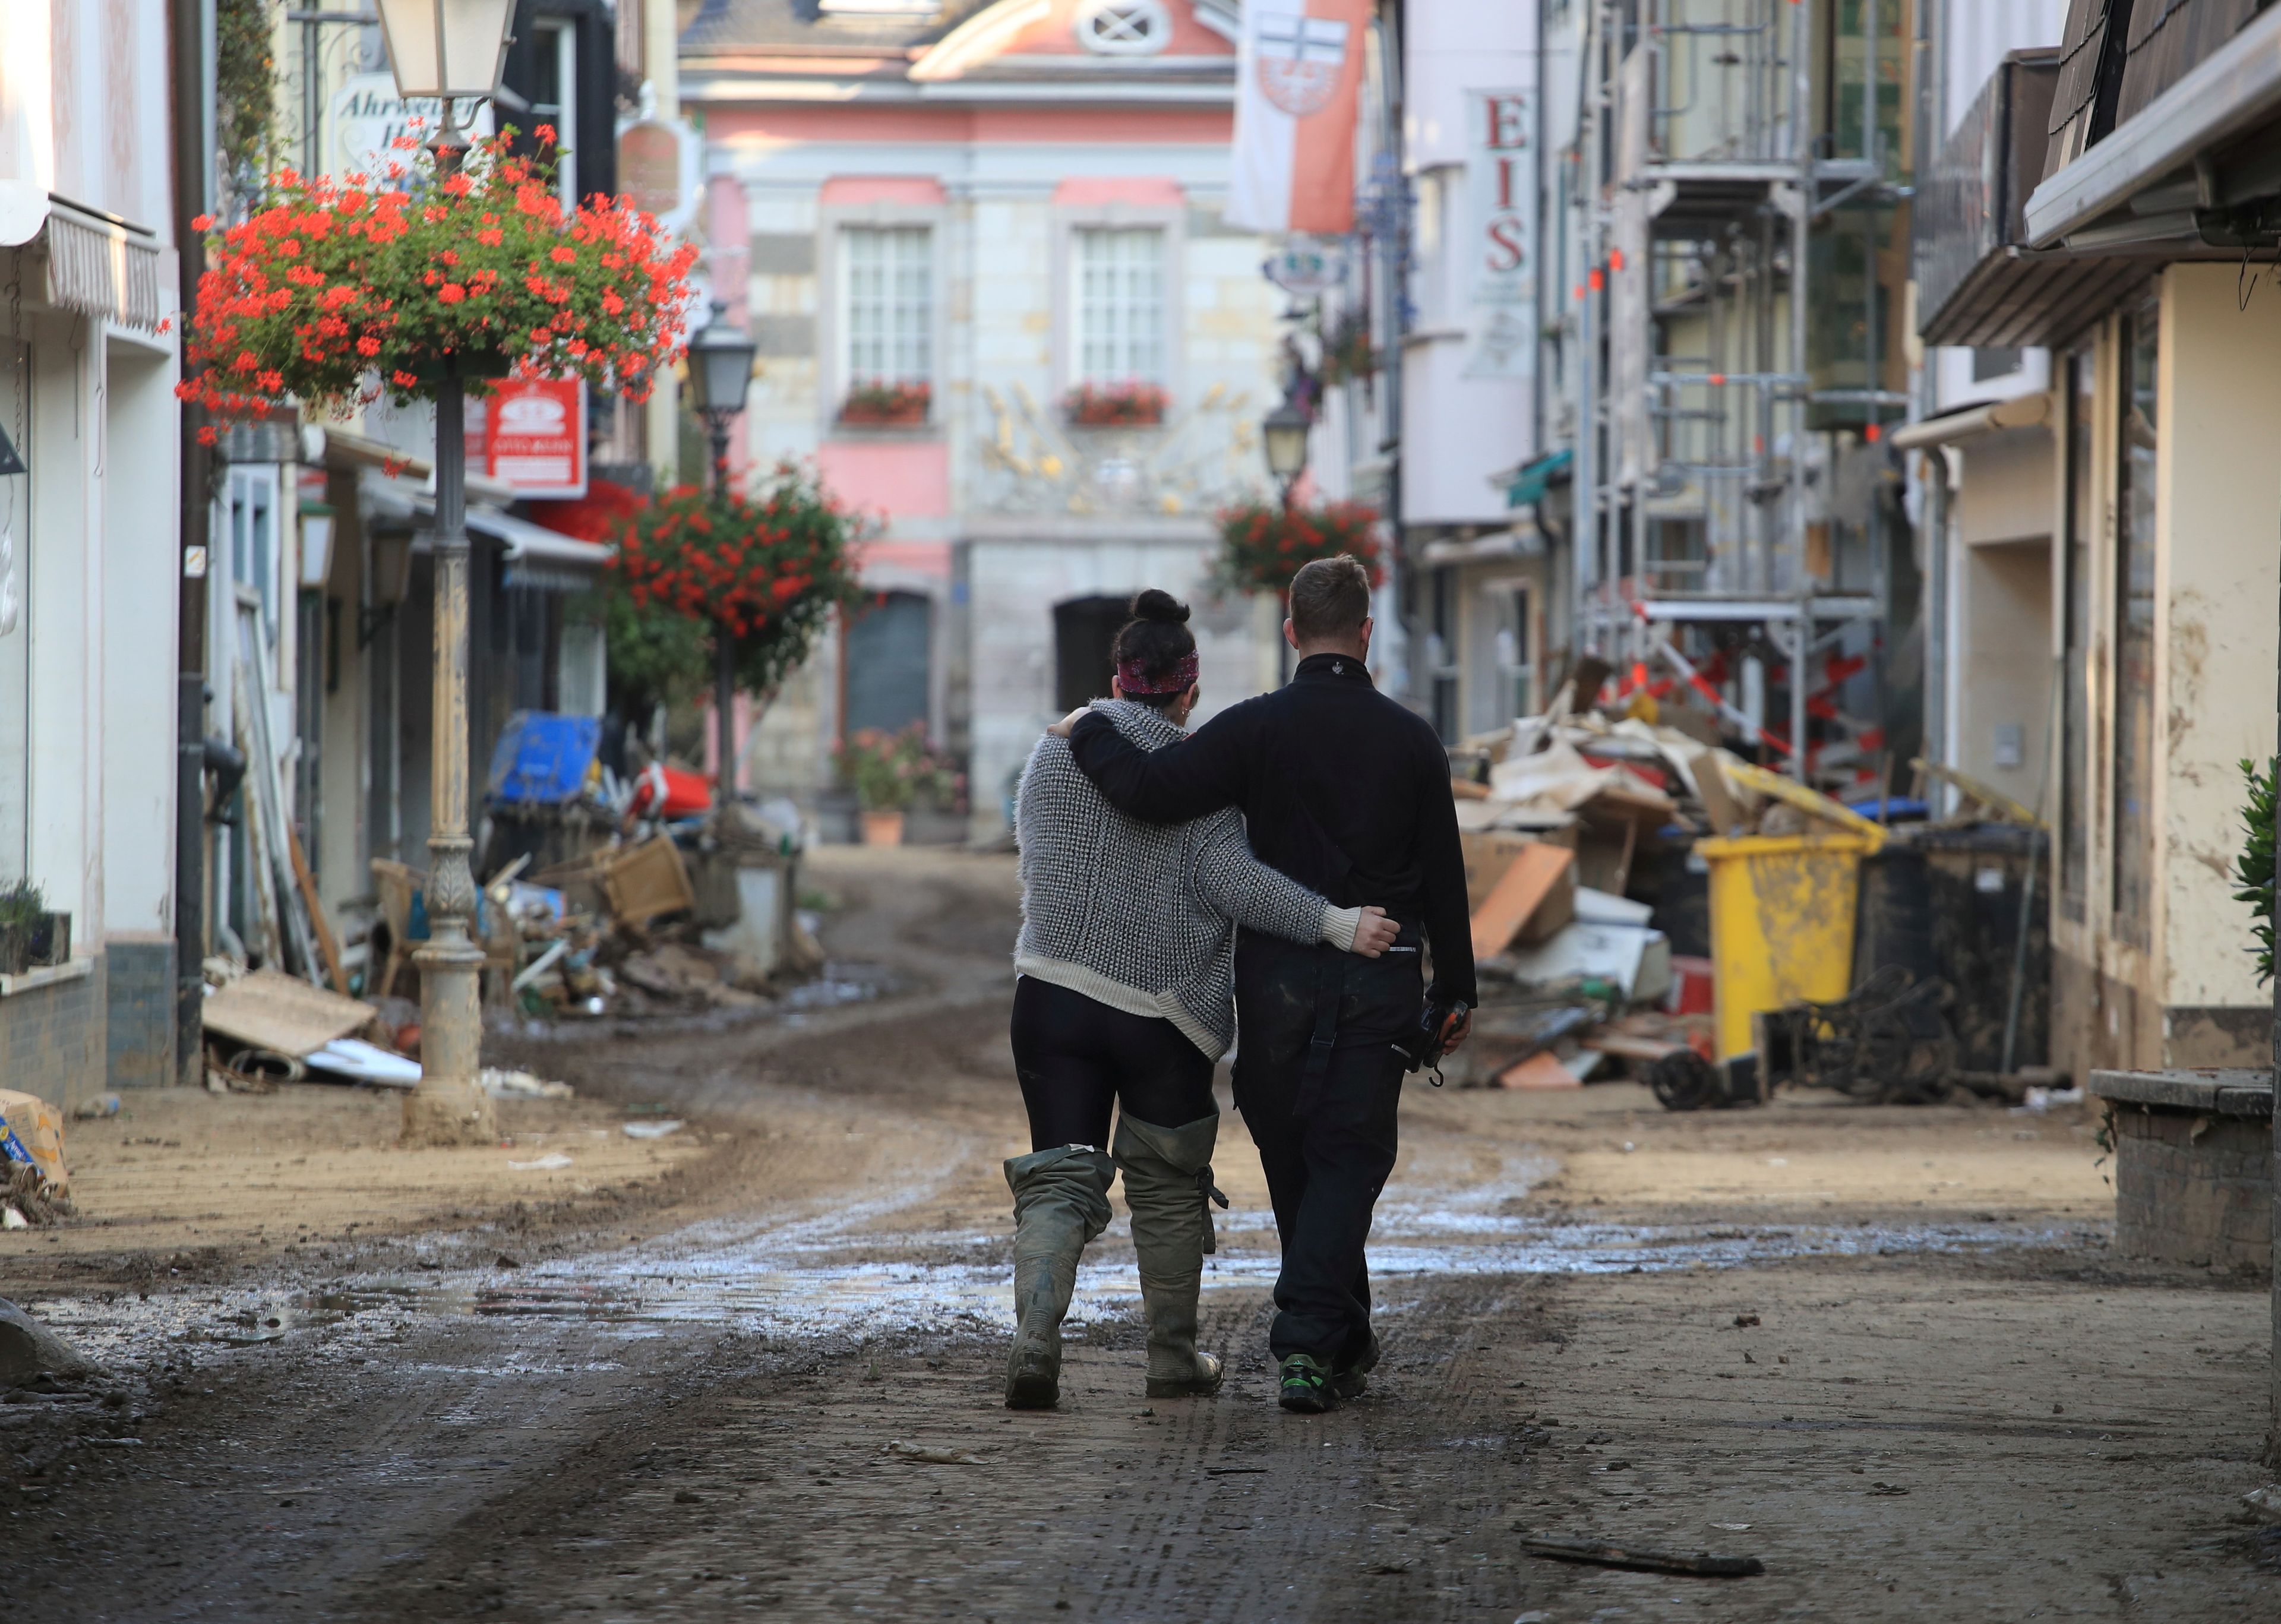 Una pareja camina por una calle en Bad Neuenahr-Ahrweiler (Alemania) tras las inundaciones de julio.